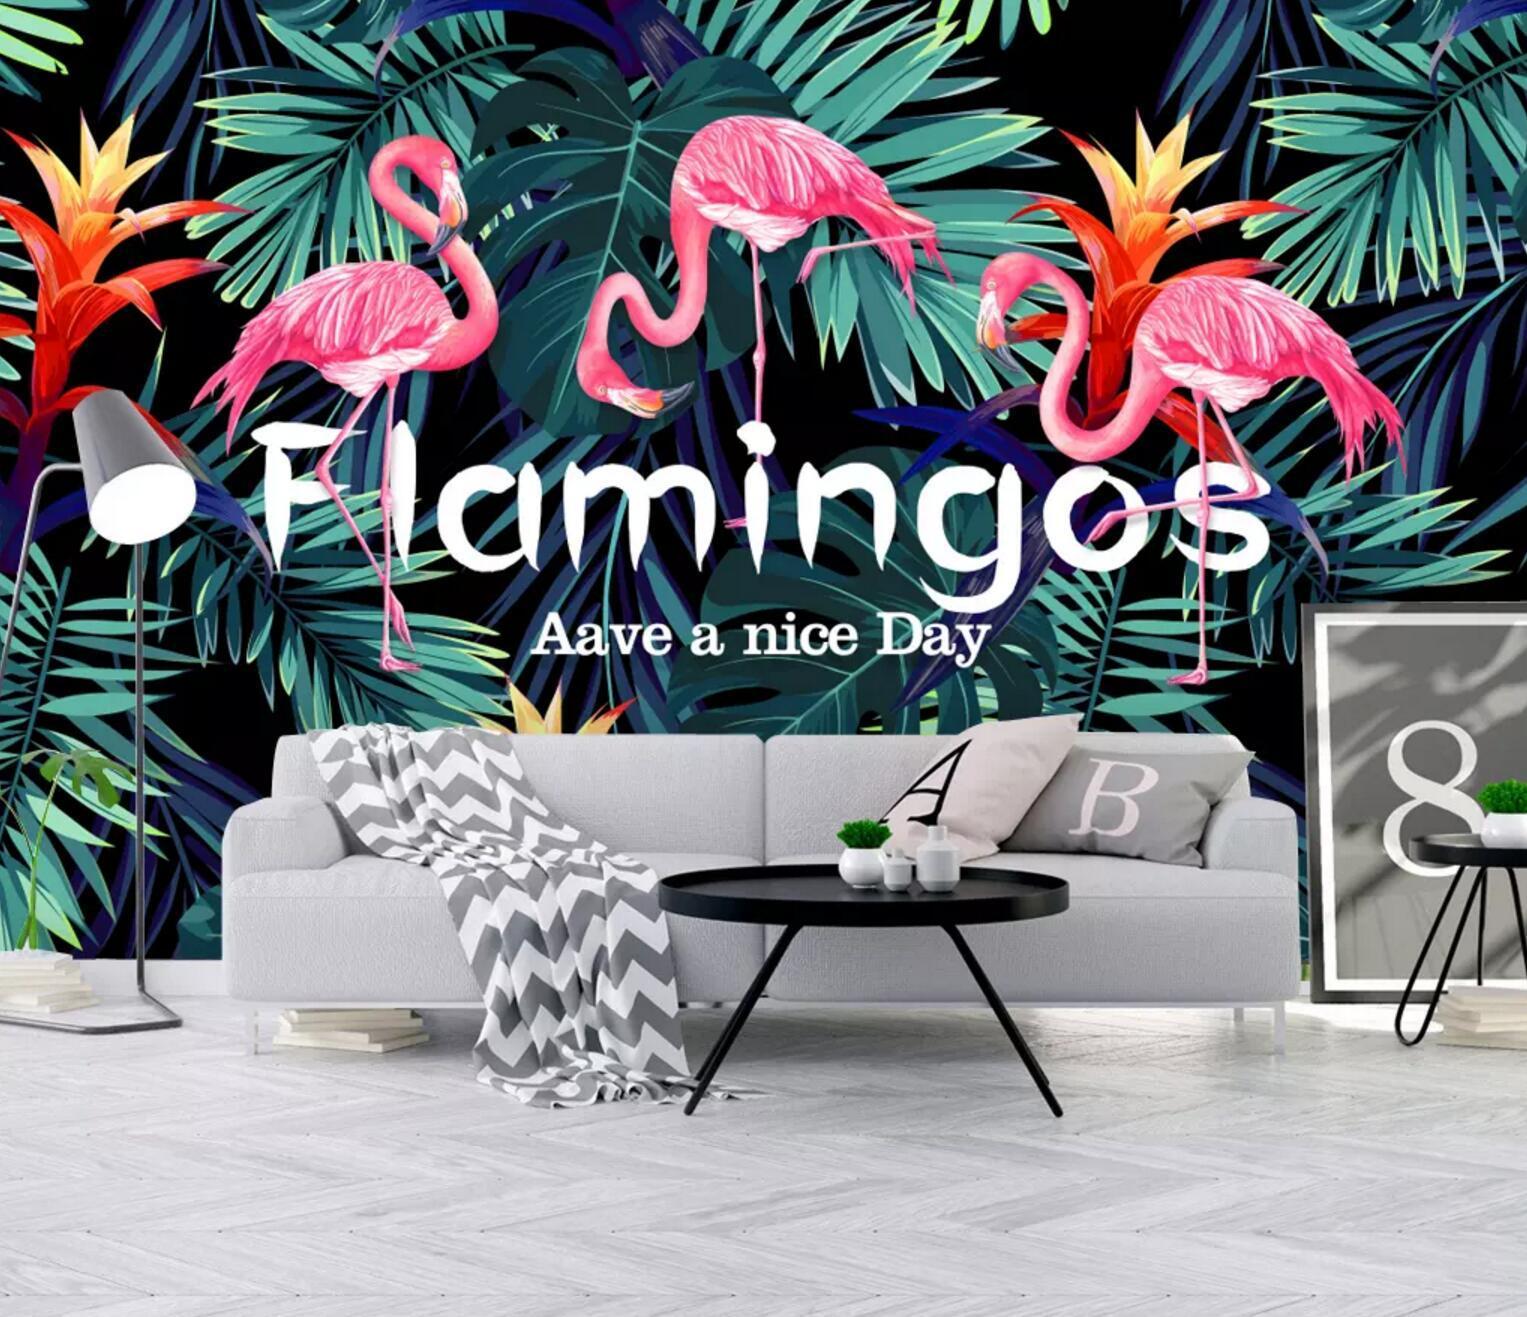 3D Flamingo English 340 Wallpaper AJ Wallpaper 